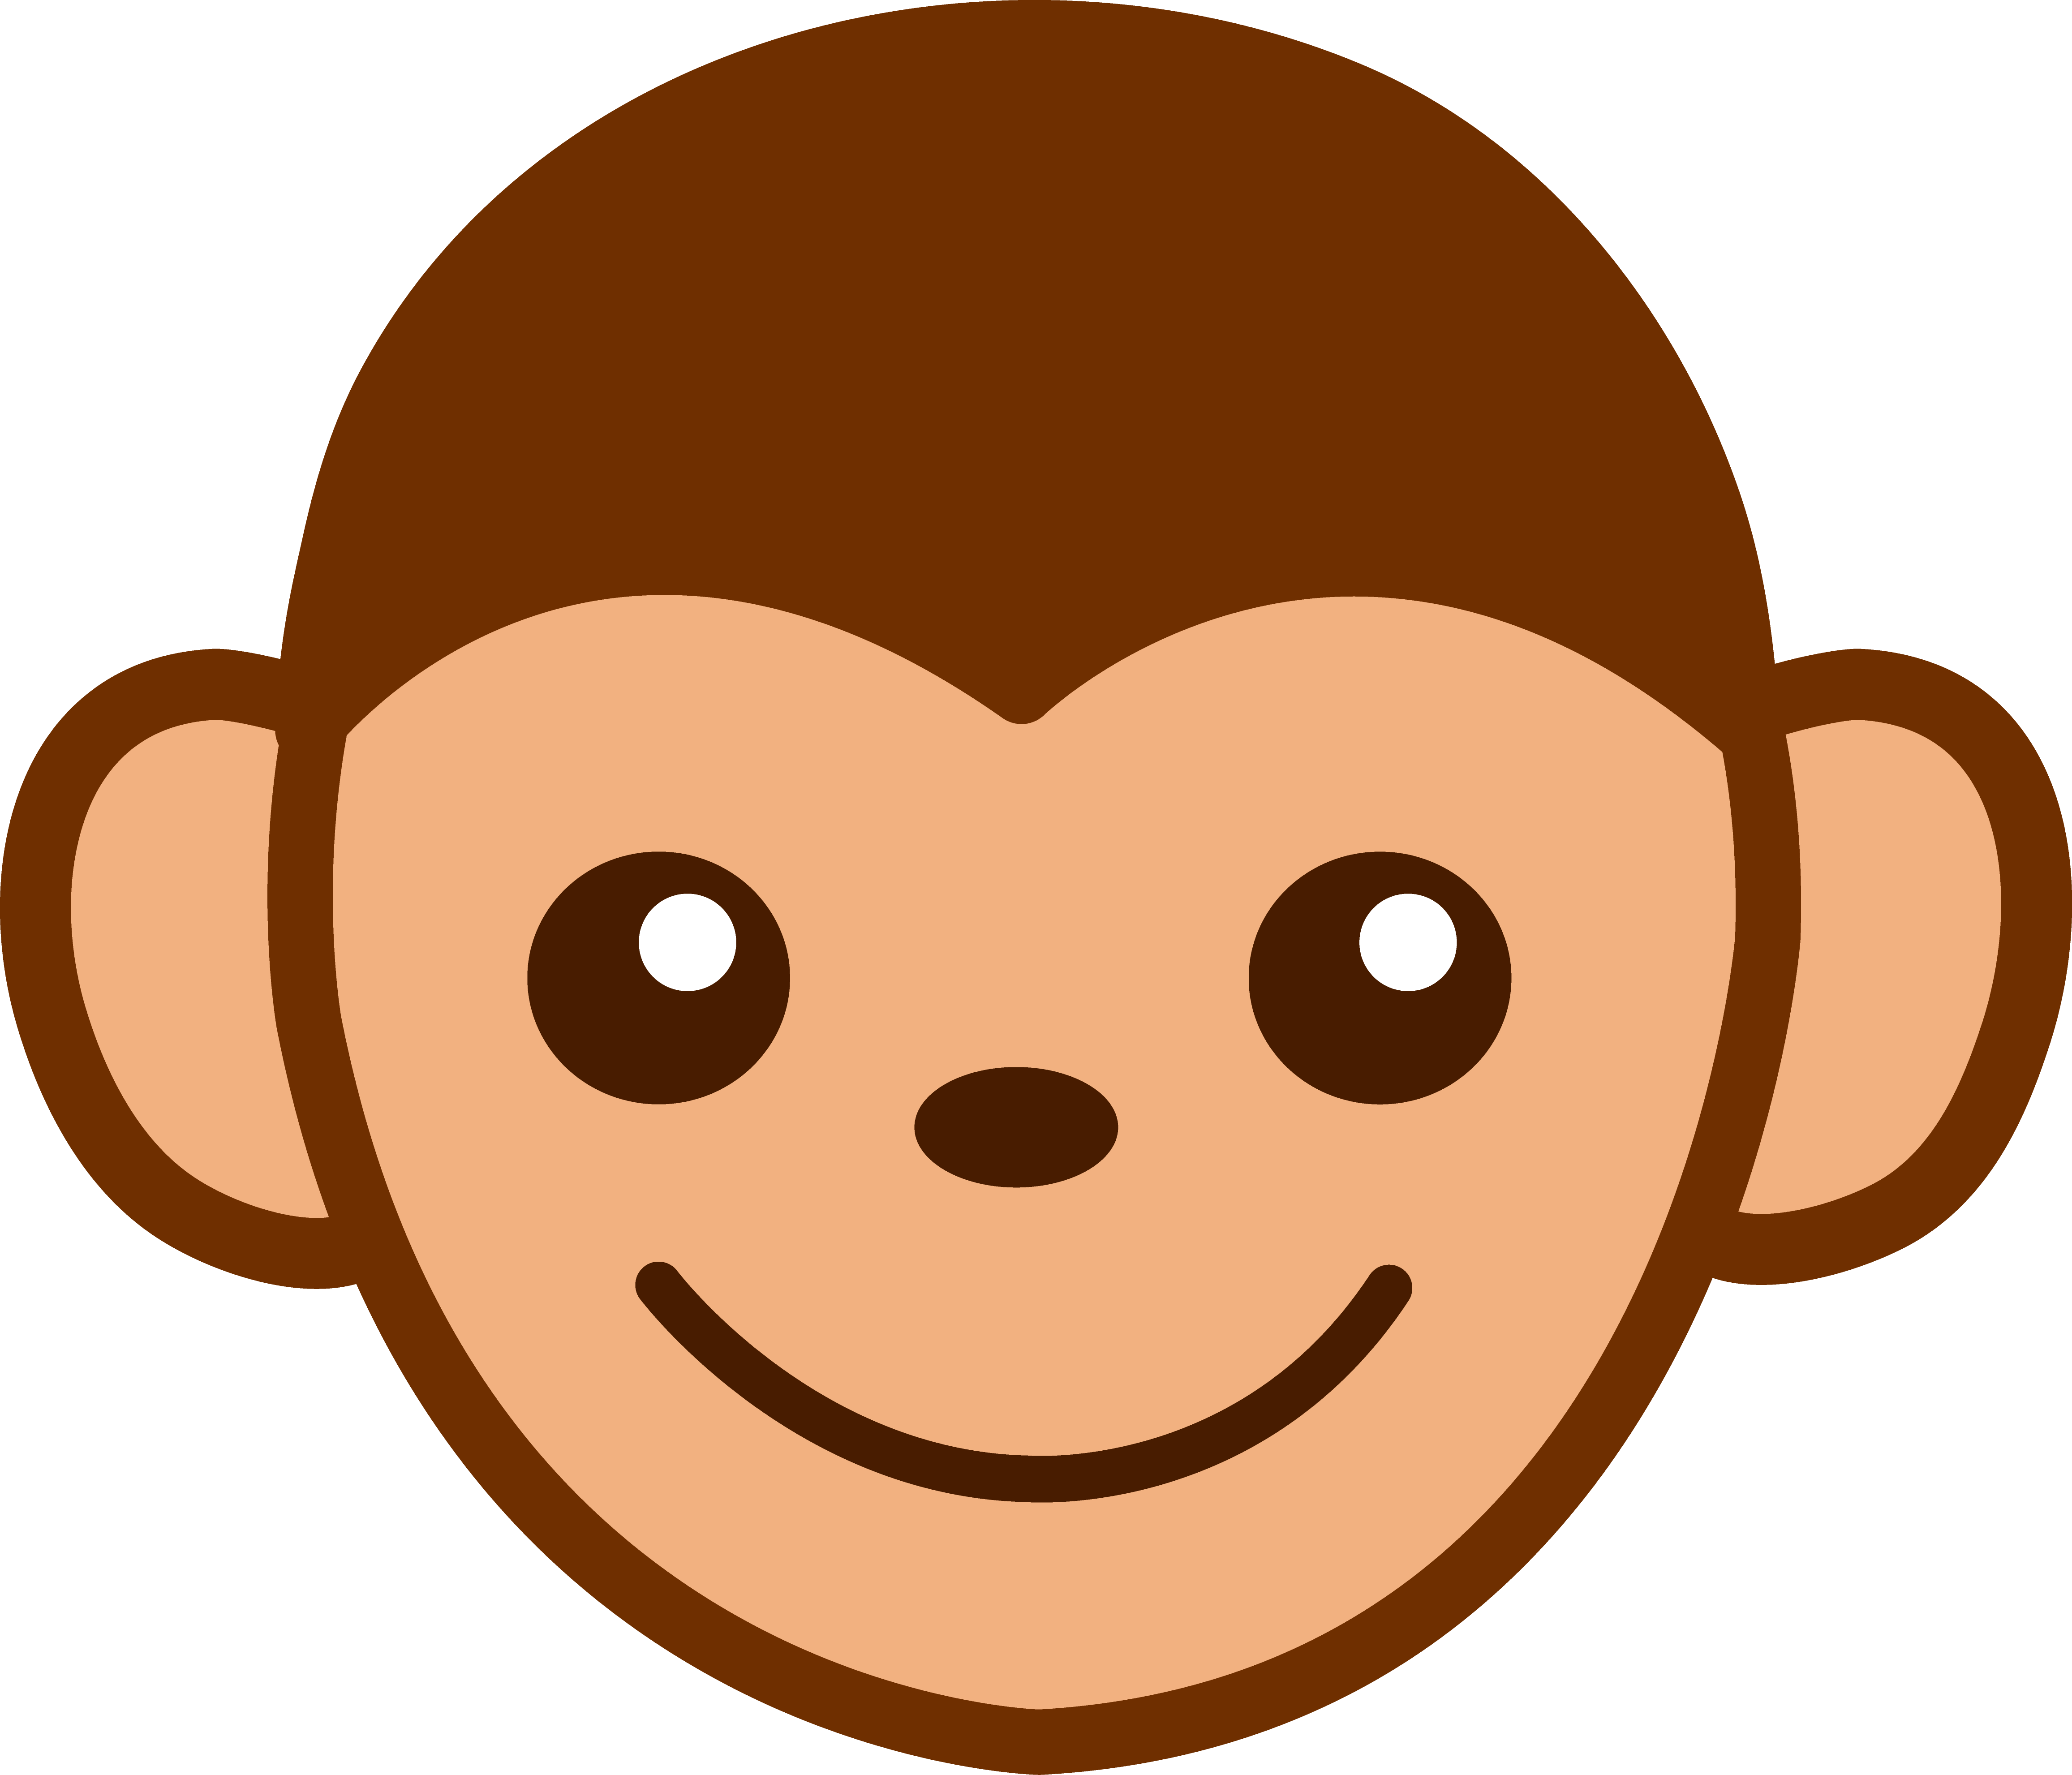 clipart image of monkey - photo #42